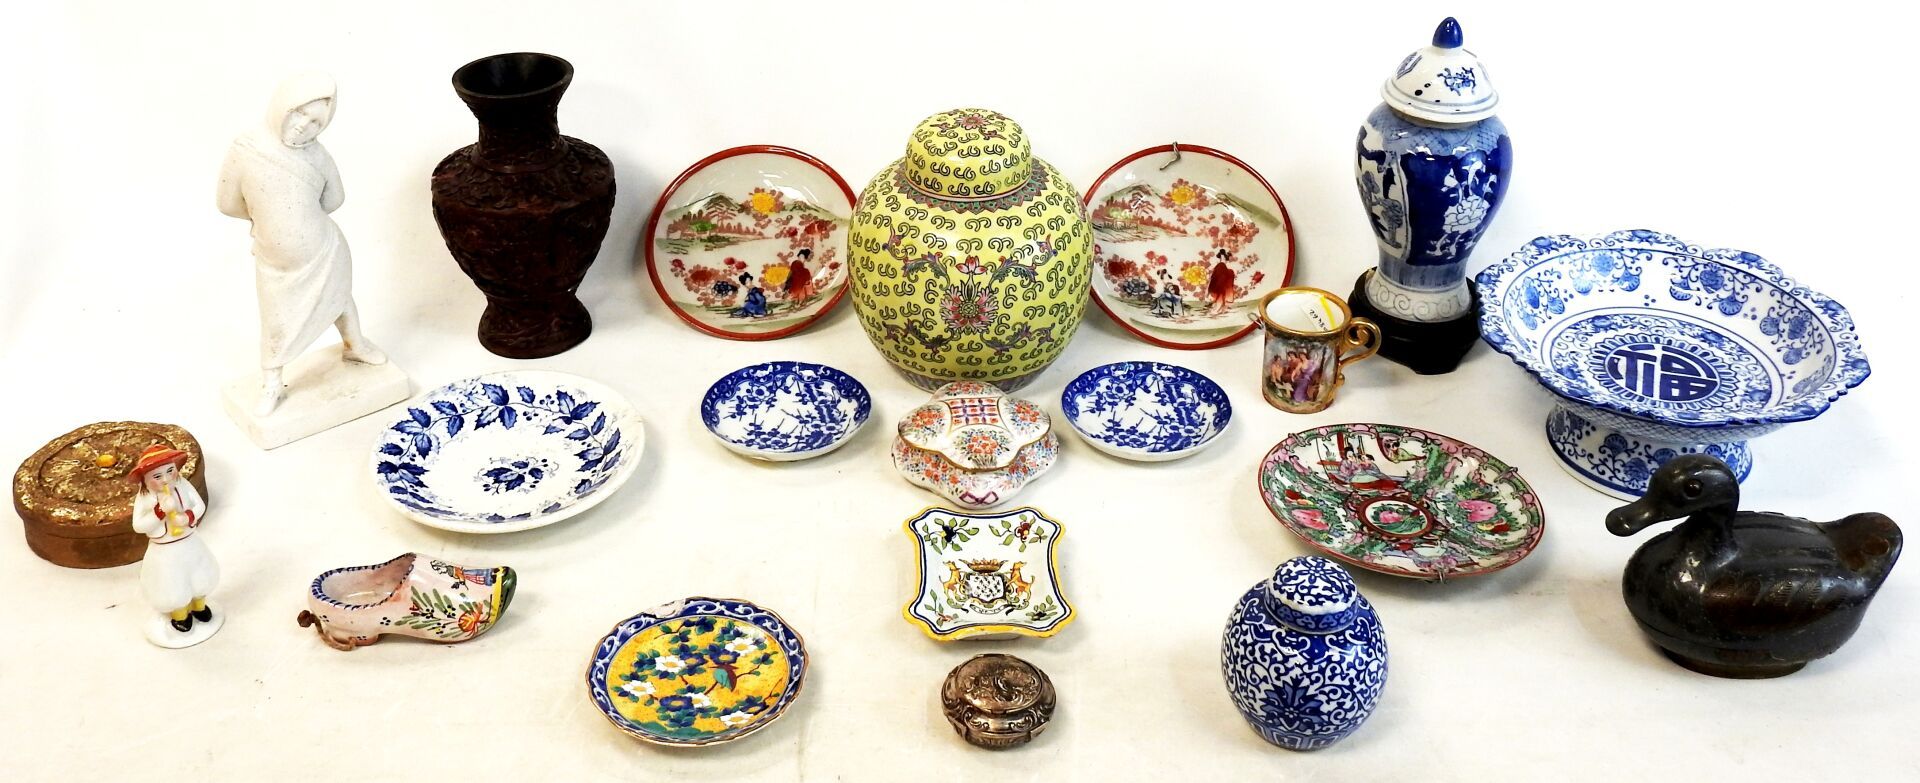 Null 亚洲

拍品包括：罐子，小盘子，小雕像，盒子，杯子和其他。

磨损，破损。